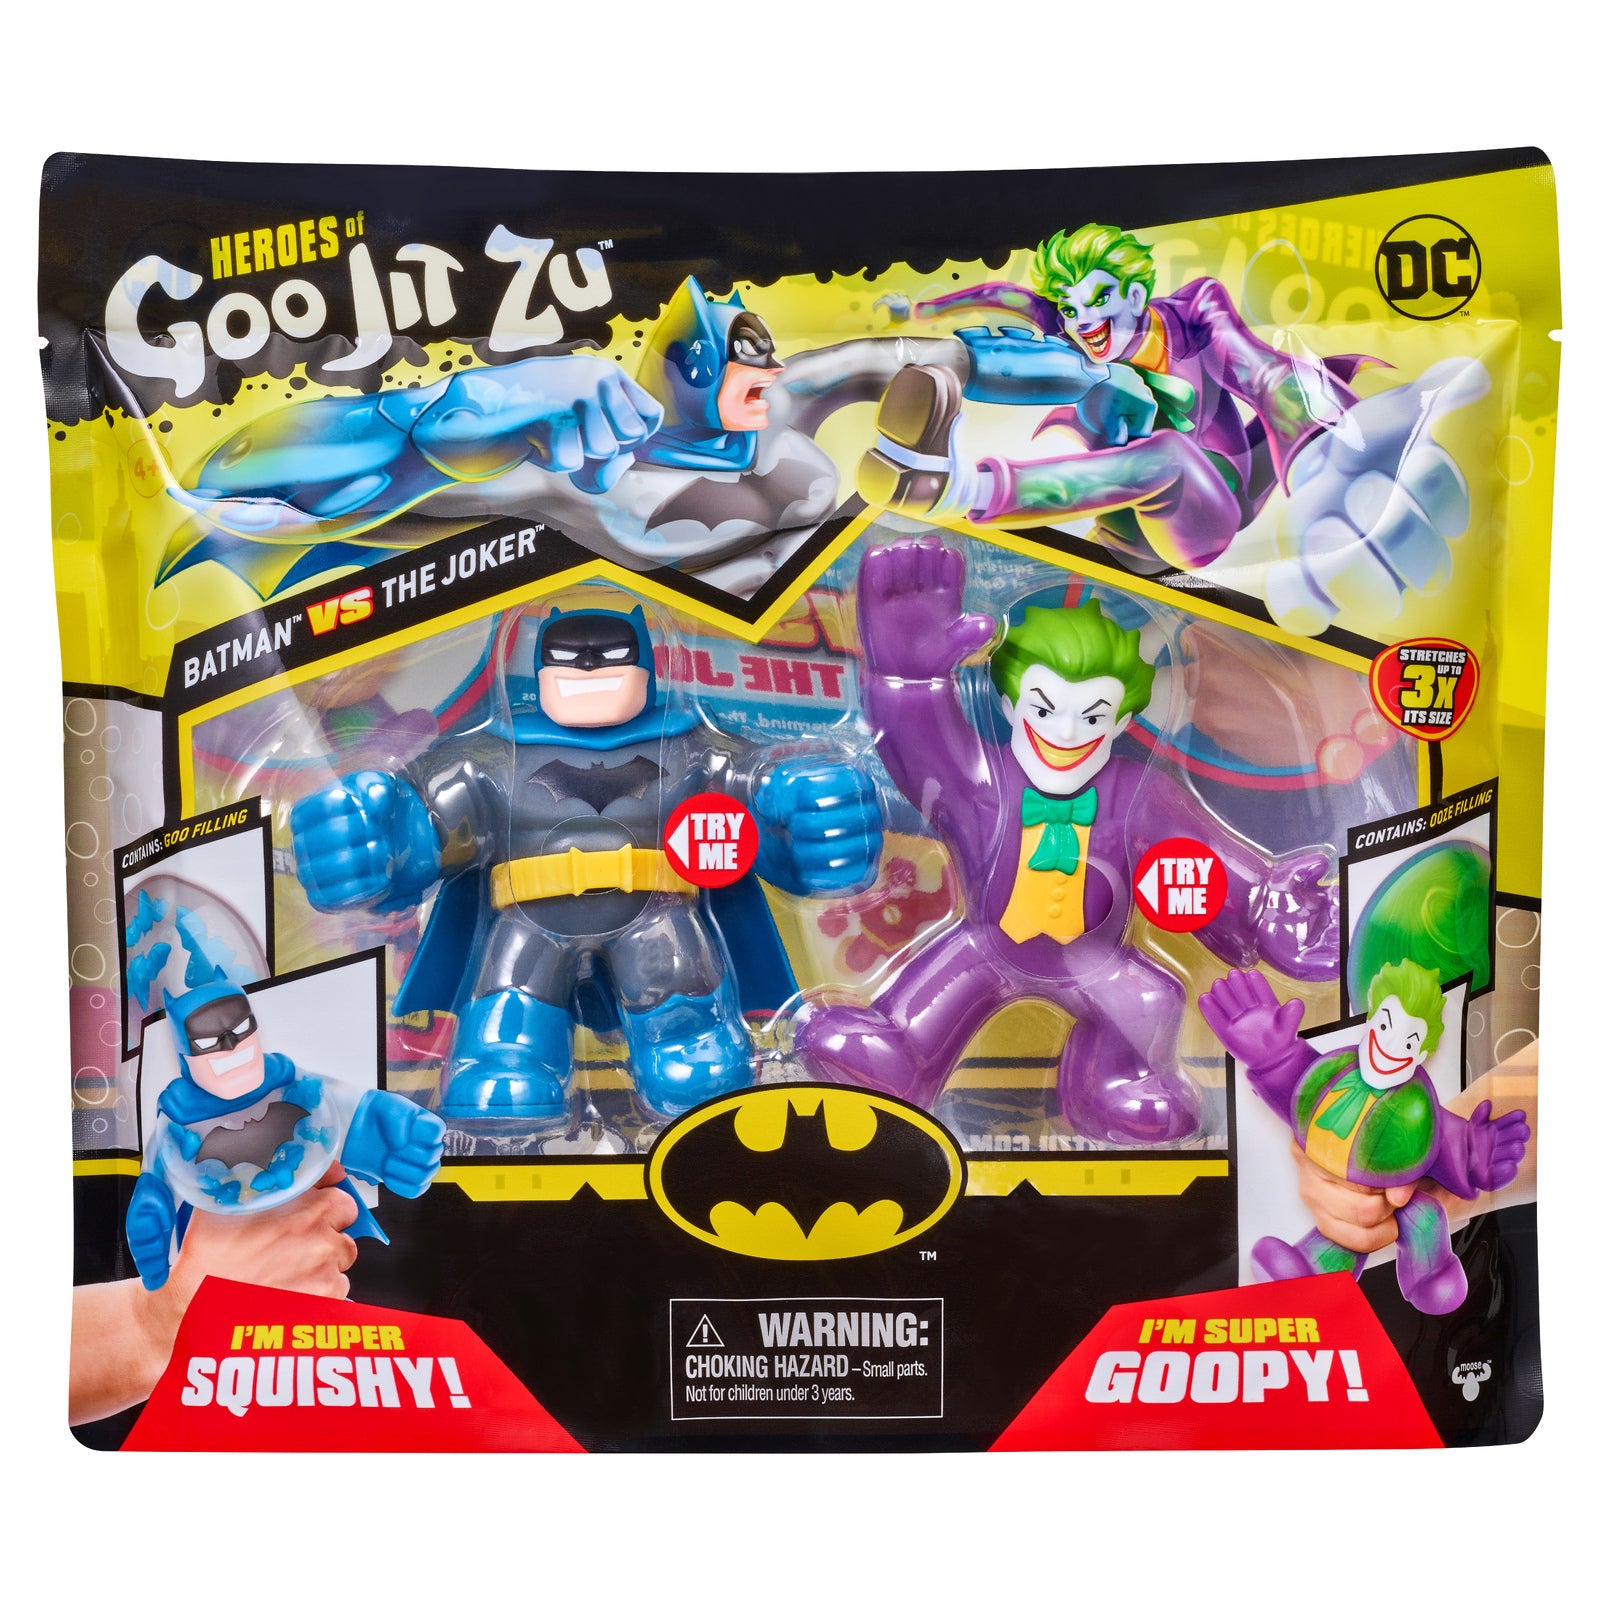 Heroes Of Goo Jit Zu DC Versus Pack - Batman vs The Joker